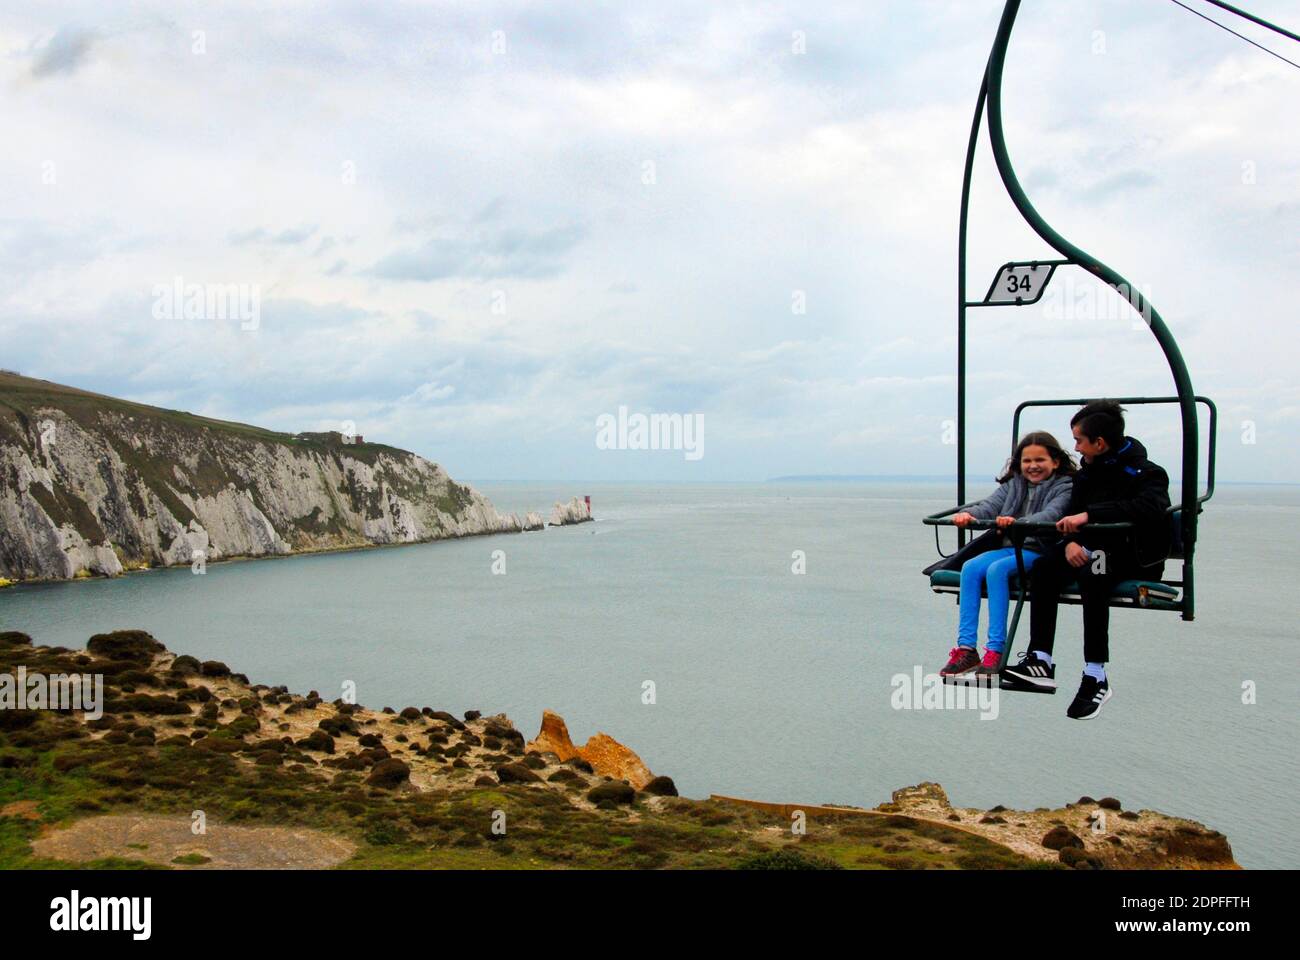 Dos jóvenes disfrutando de un paseo en telesilla, Alum Bay, Isla de Wight con el faro de Needles en la distancia Foto de stock